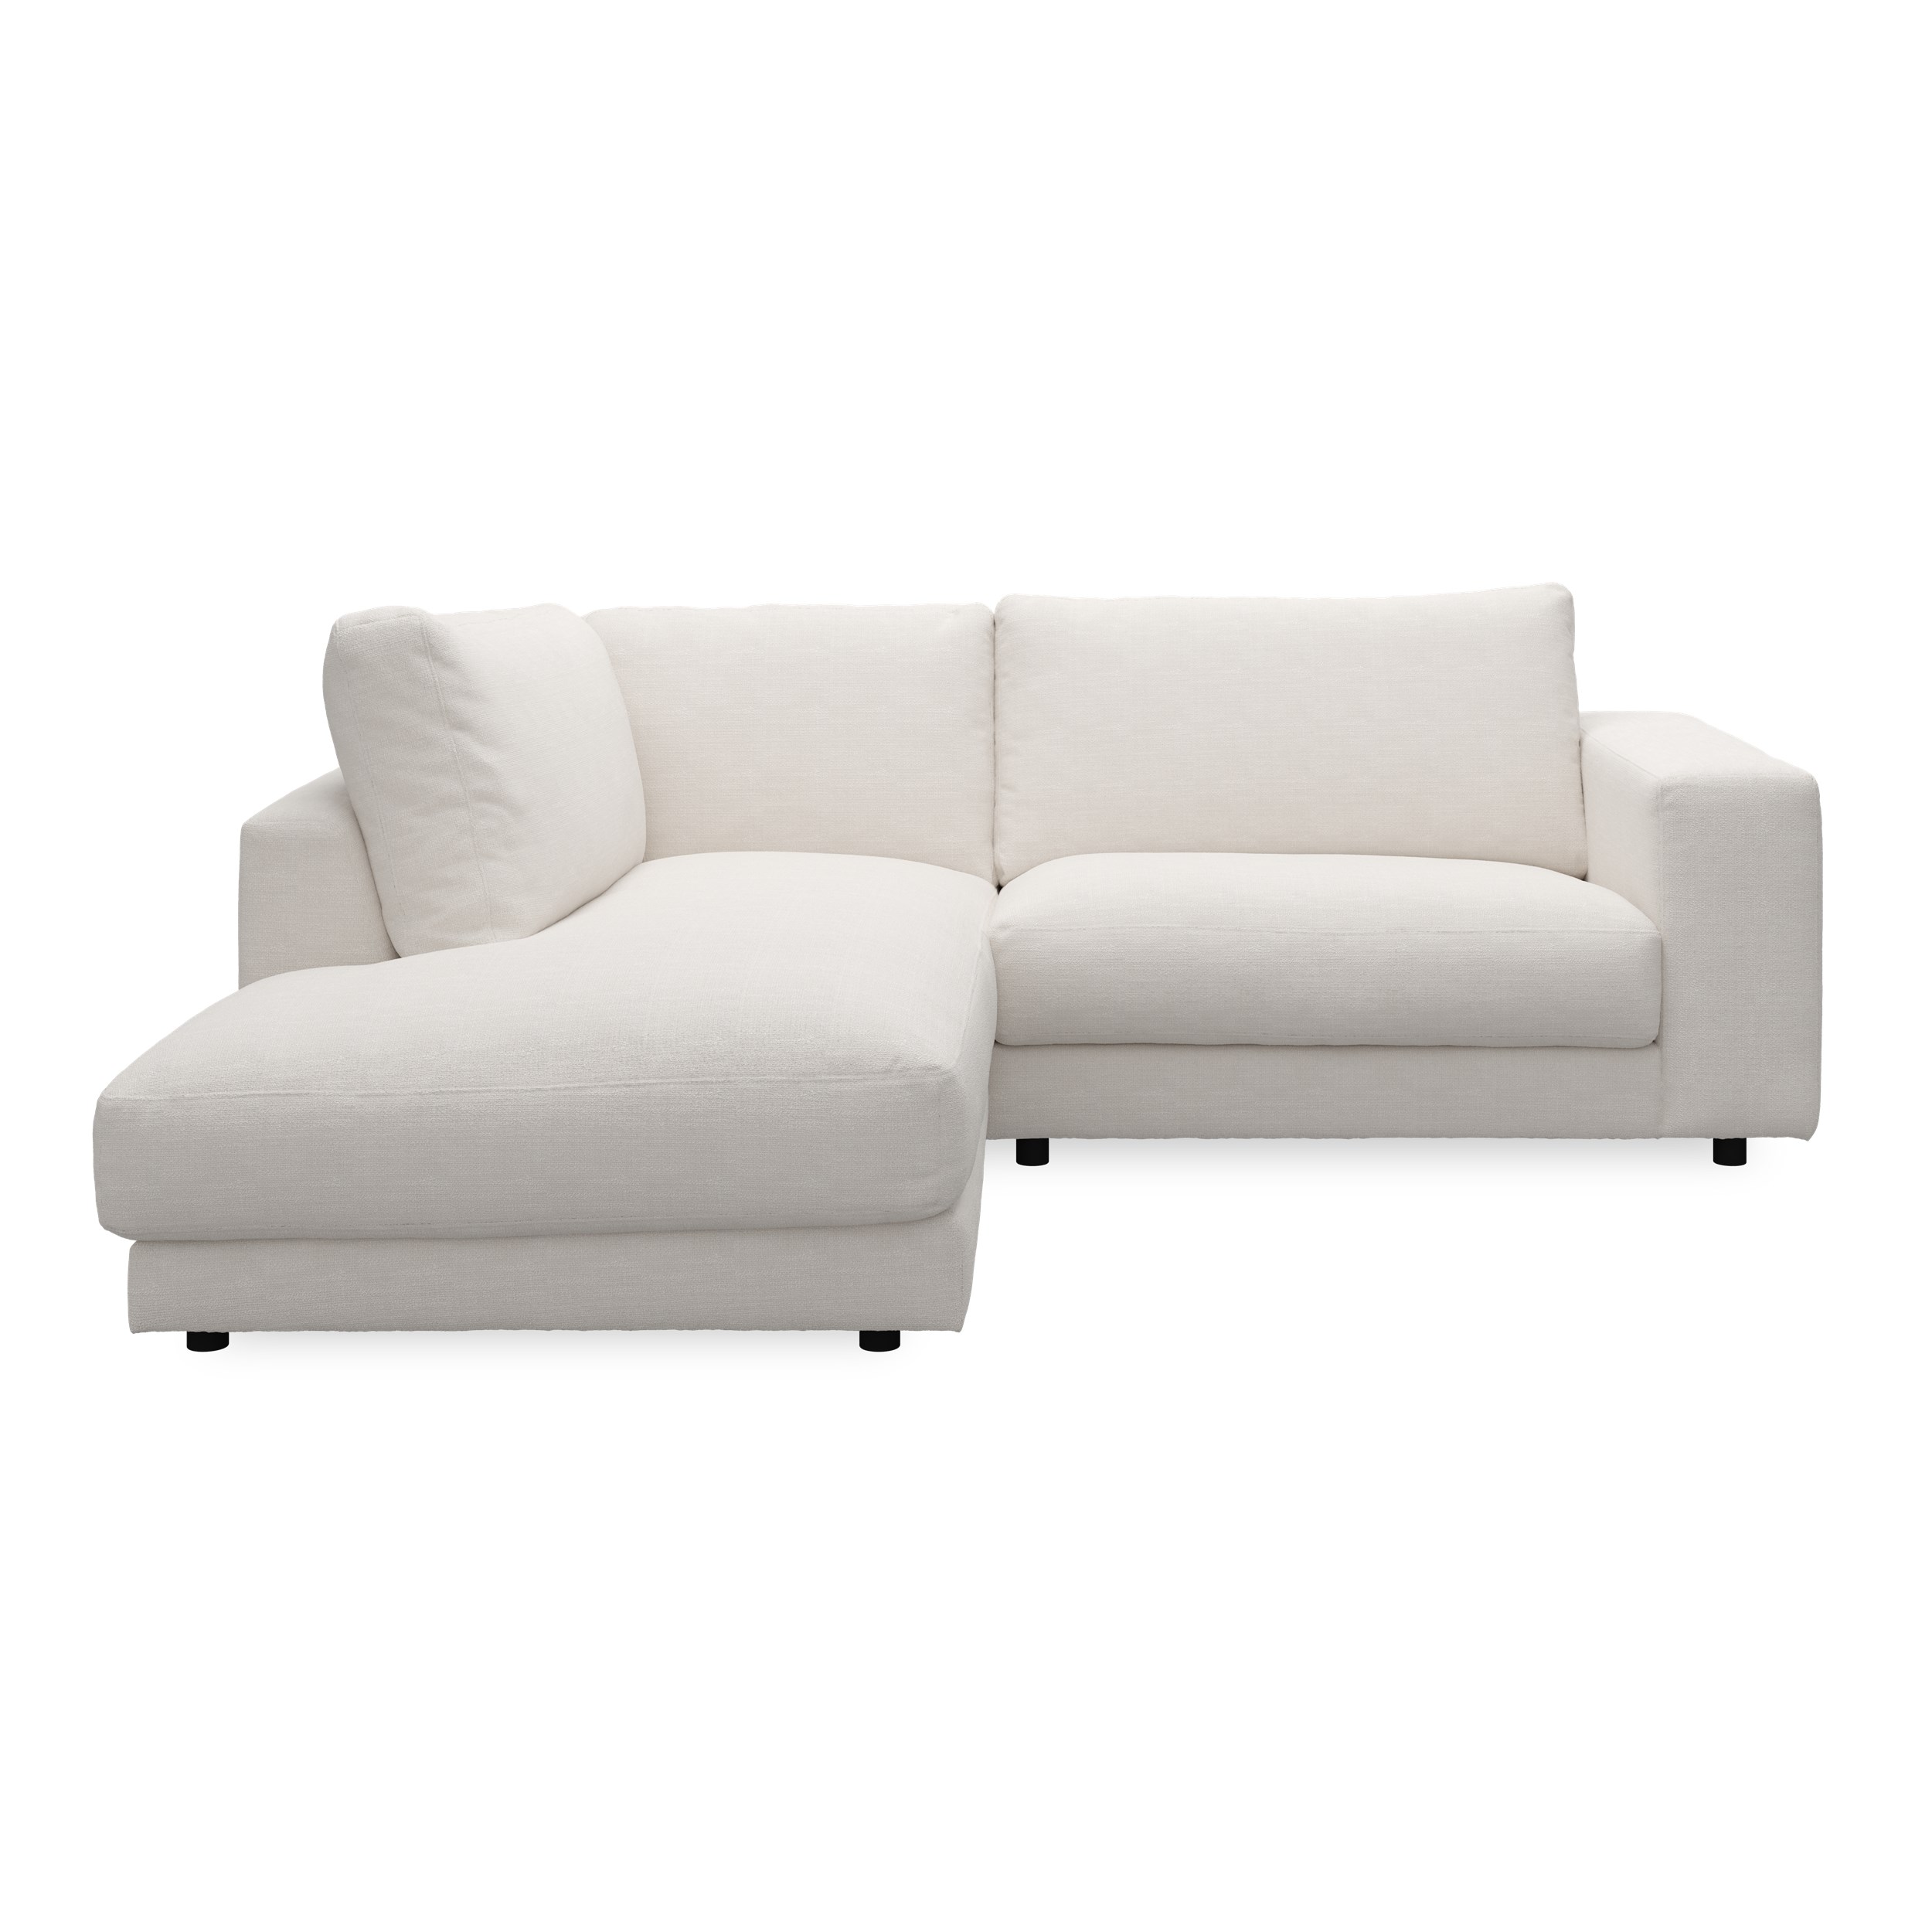 Bennent vänstervänd soffa med divan - Picasso Natur klädsel, ben i svart plast och S:skum/fib/din/sili R:Dun/skum